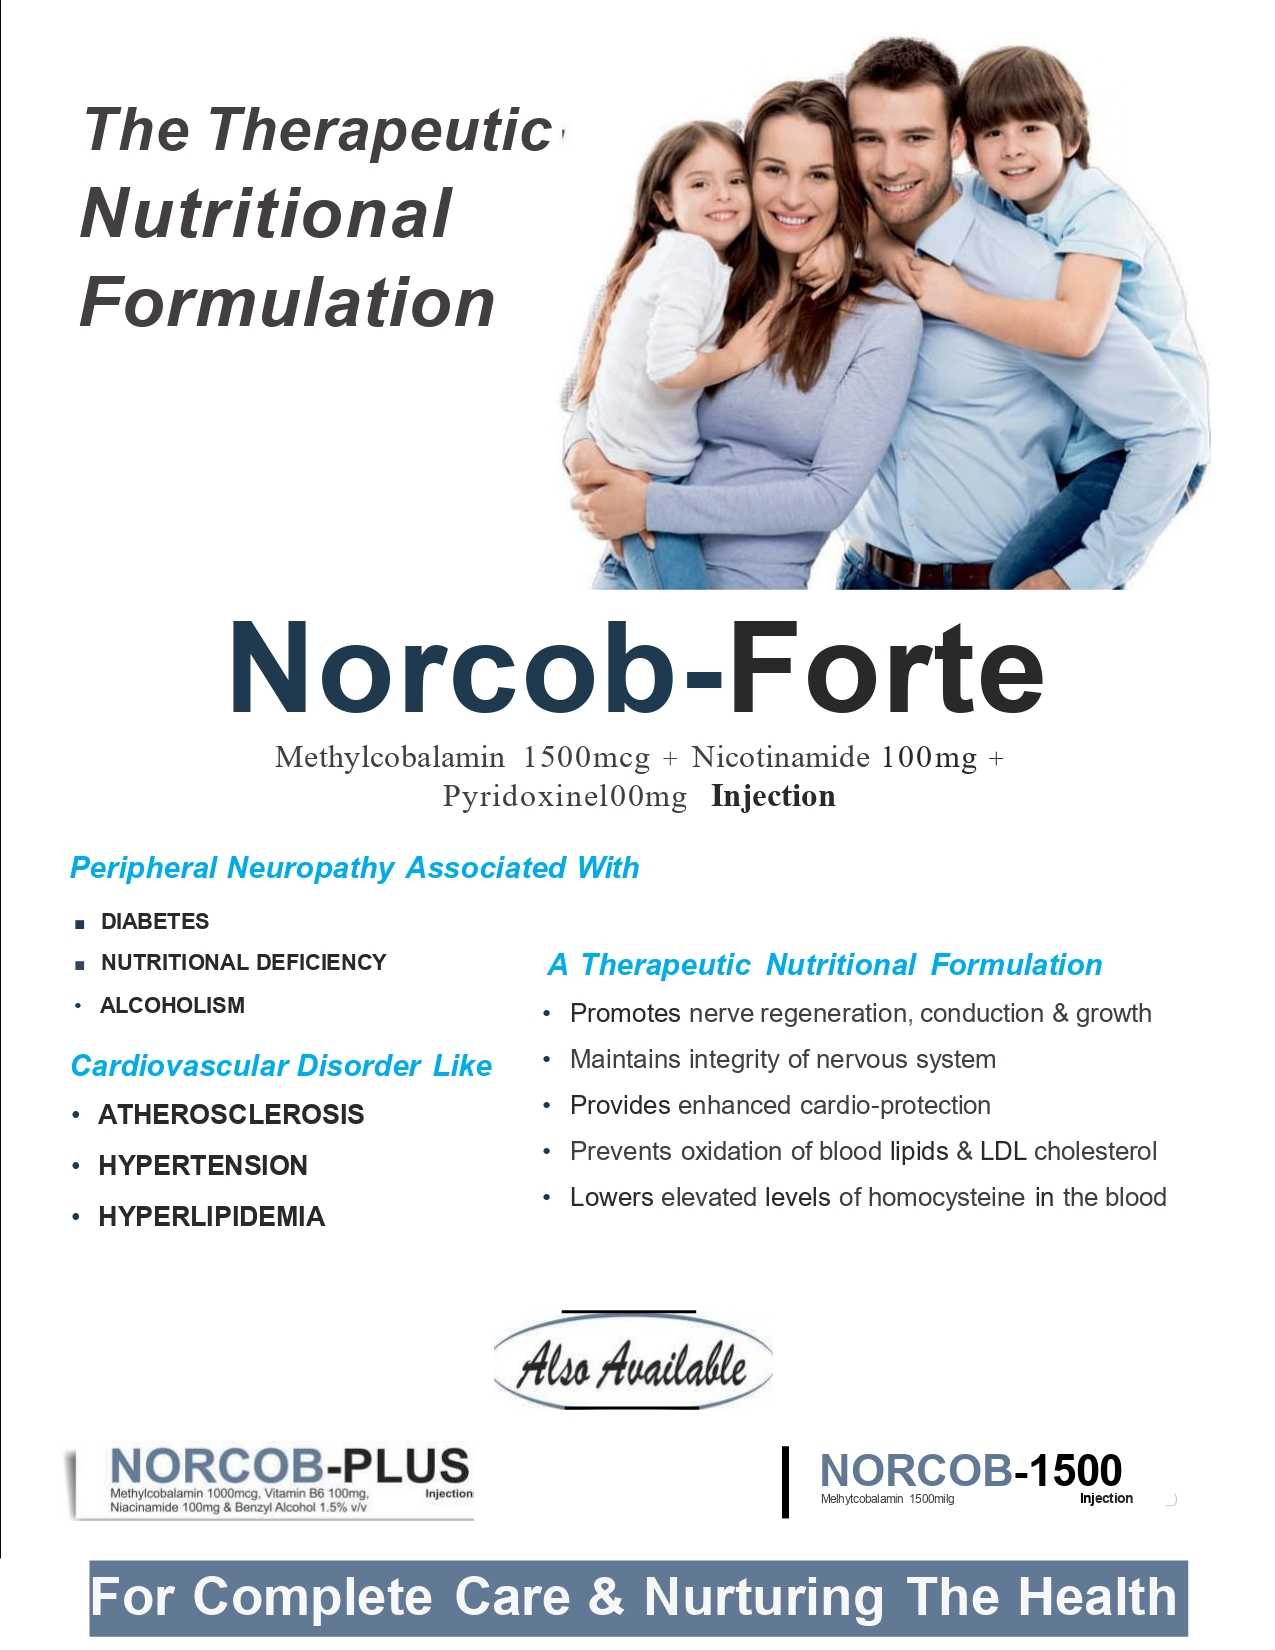 Norcob-Forte